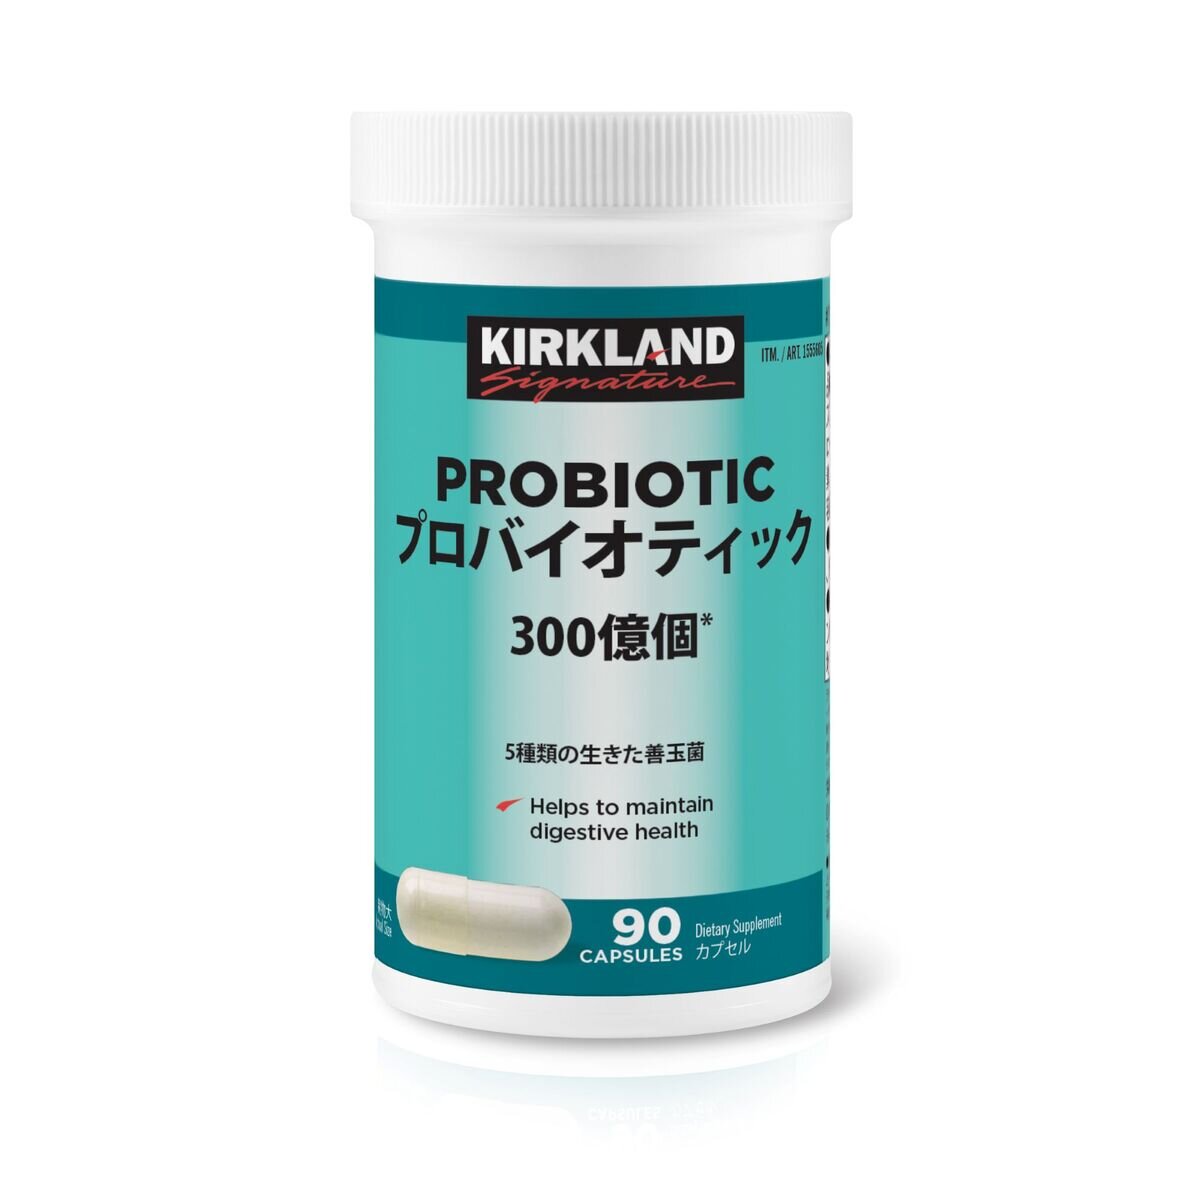 カークランドシグネチャー プロバイオティック 乳酸菌 | Costco Japan